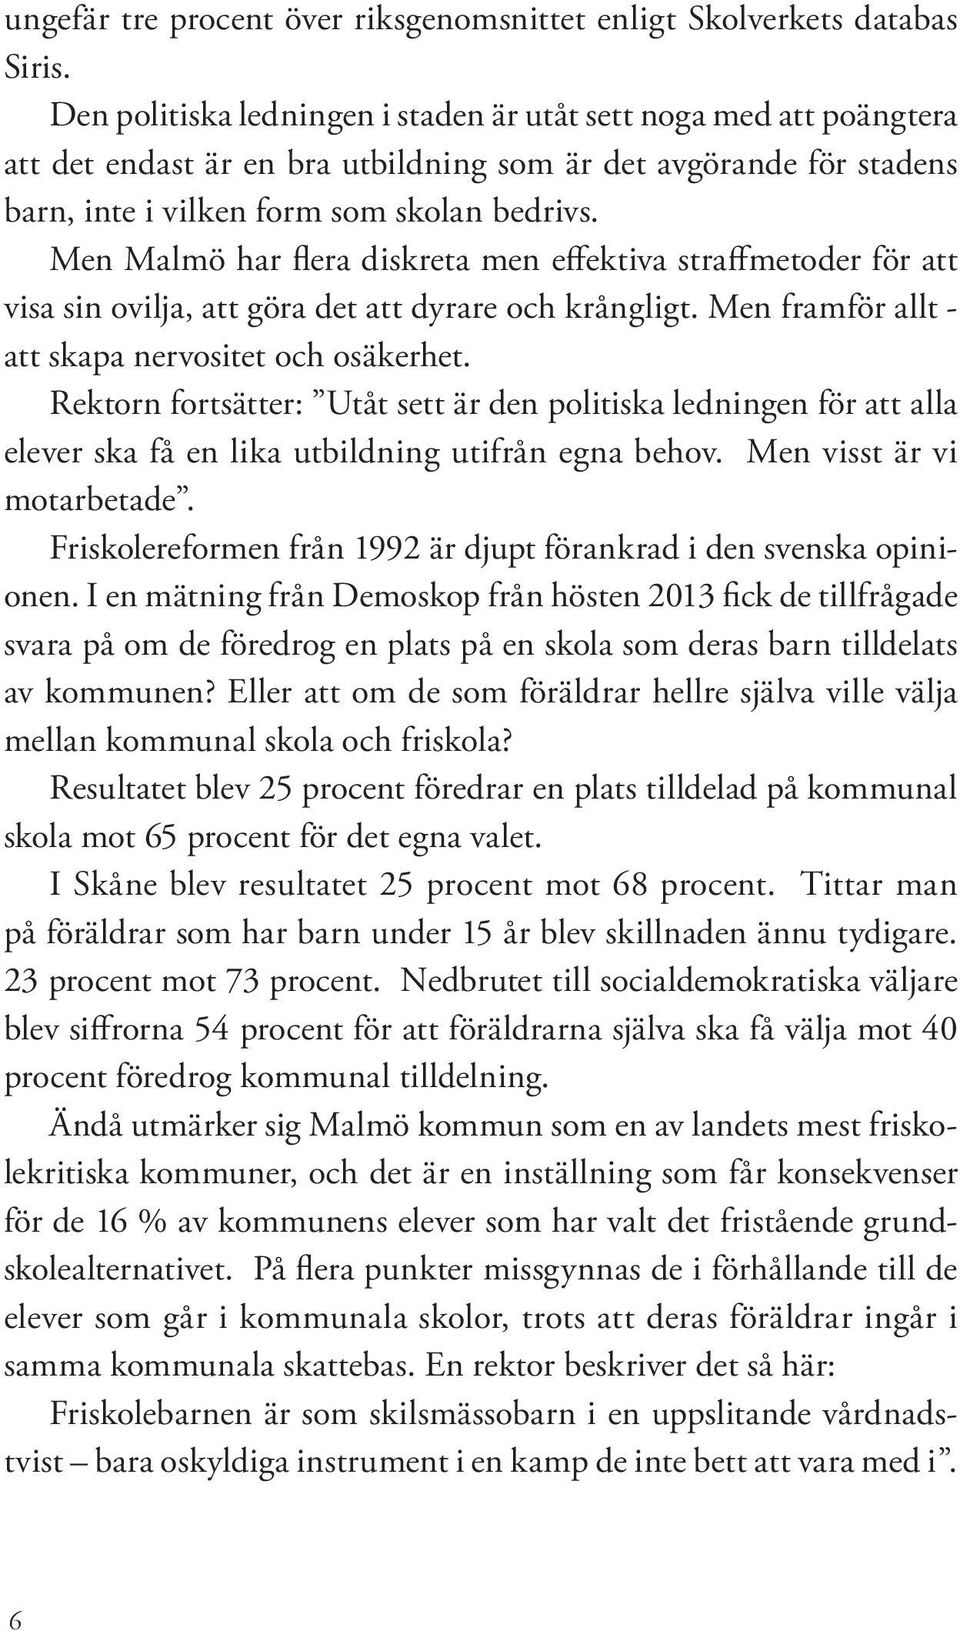 Men Malmö har flera diskreta men effektiva straffmetoder för att visa sin ovilja, att göra det att dyrare och krångligt. Men framför allt - att skapa nervositet och osäkerhet.